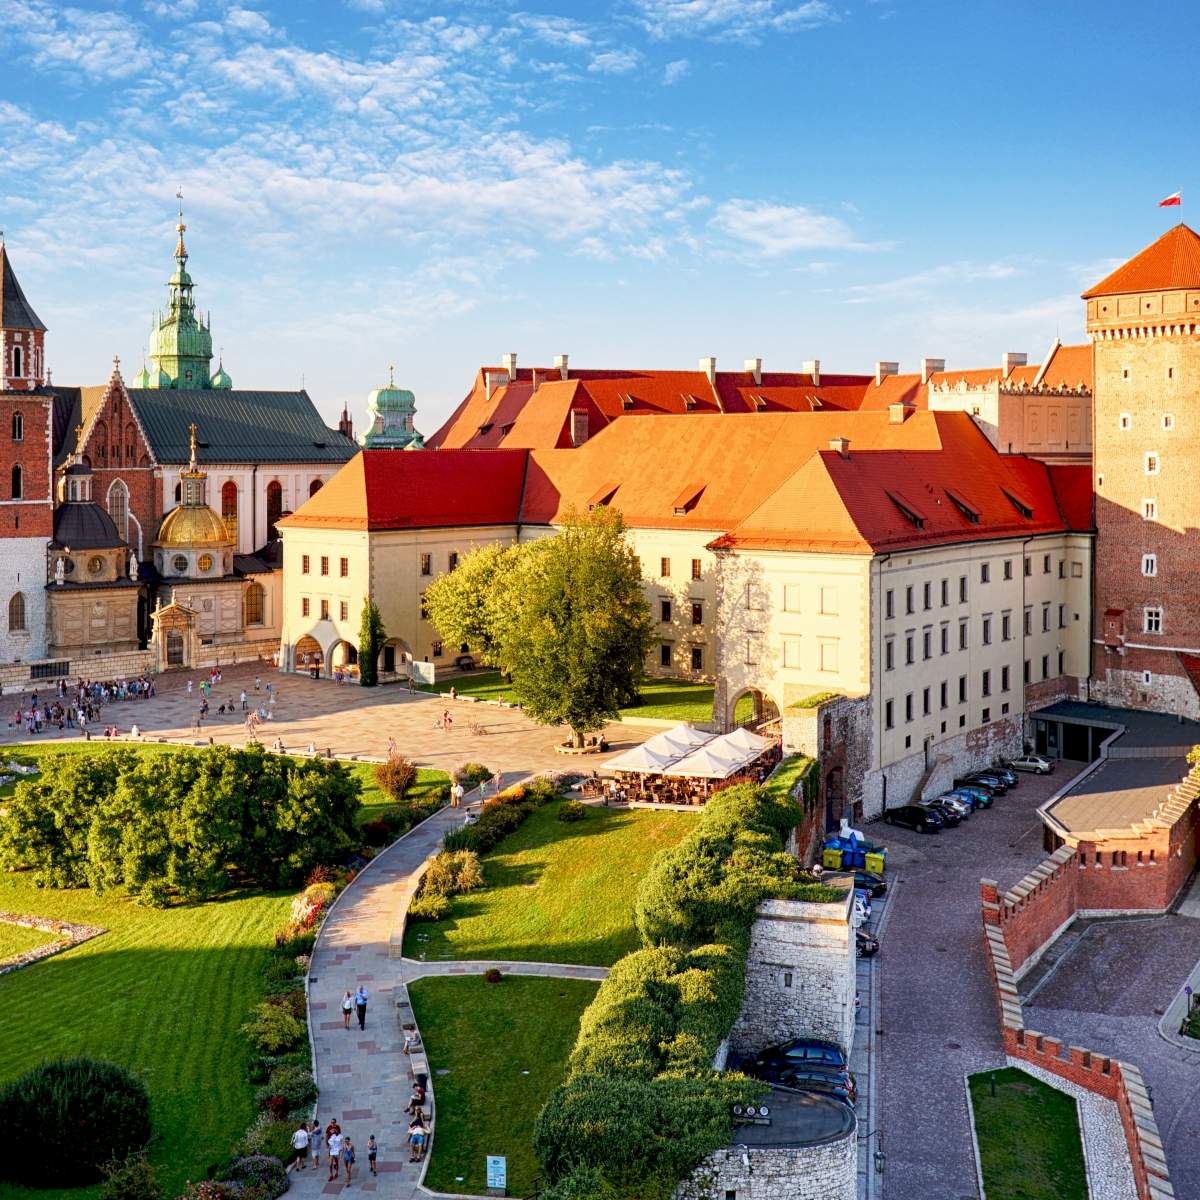 Tour di Wawel con audioguida, vista del Castello di Wawel, Cattedrale di Wawel